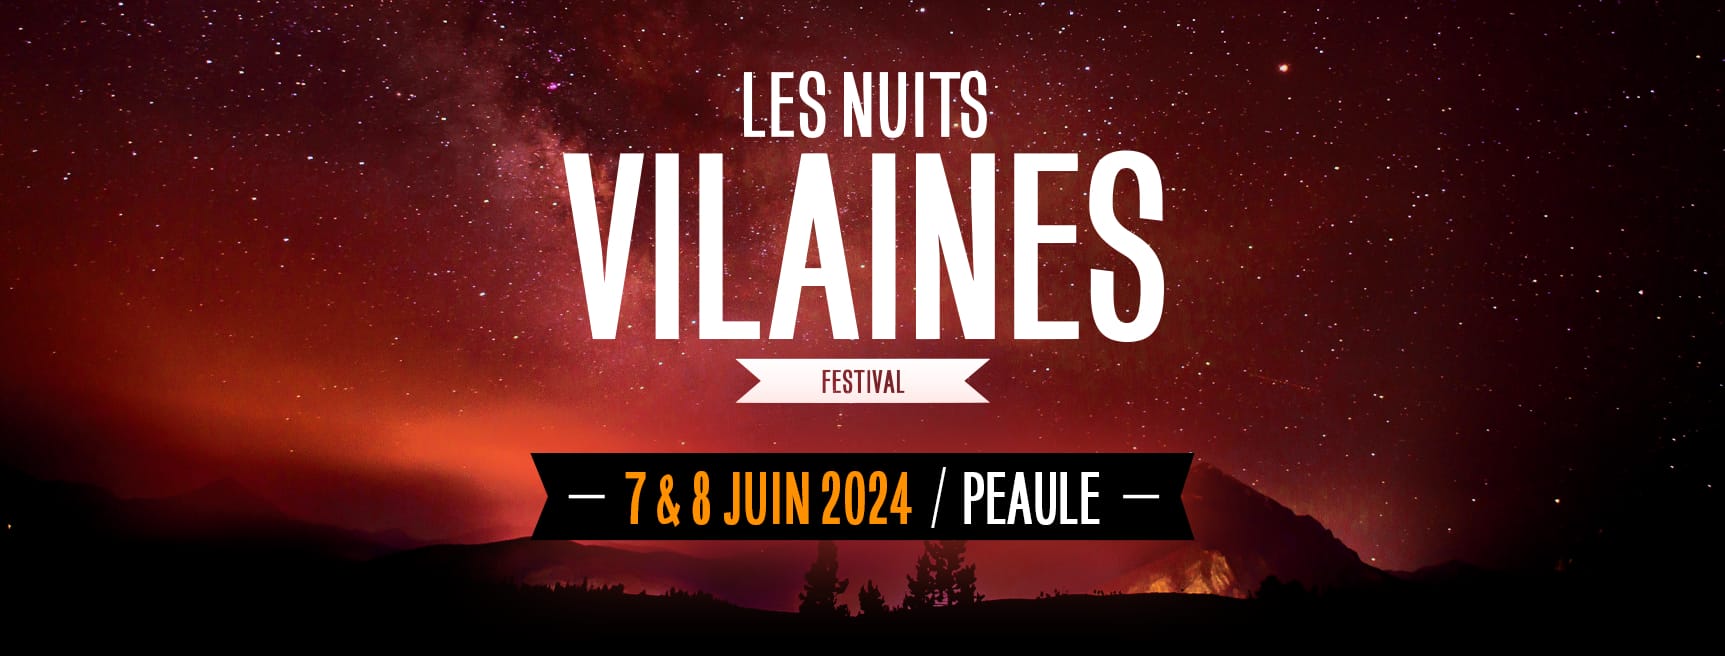 Festival Les Nuits Vilaines les 7 et 8 juin 2024 à Peaule (56)